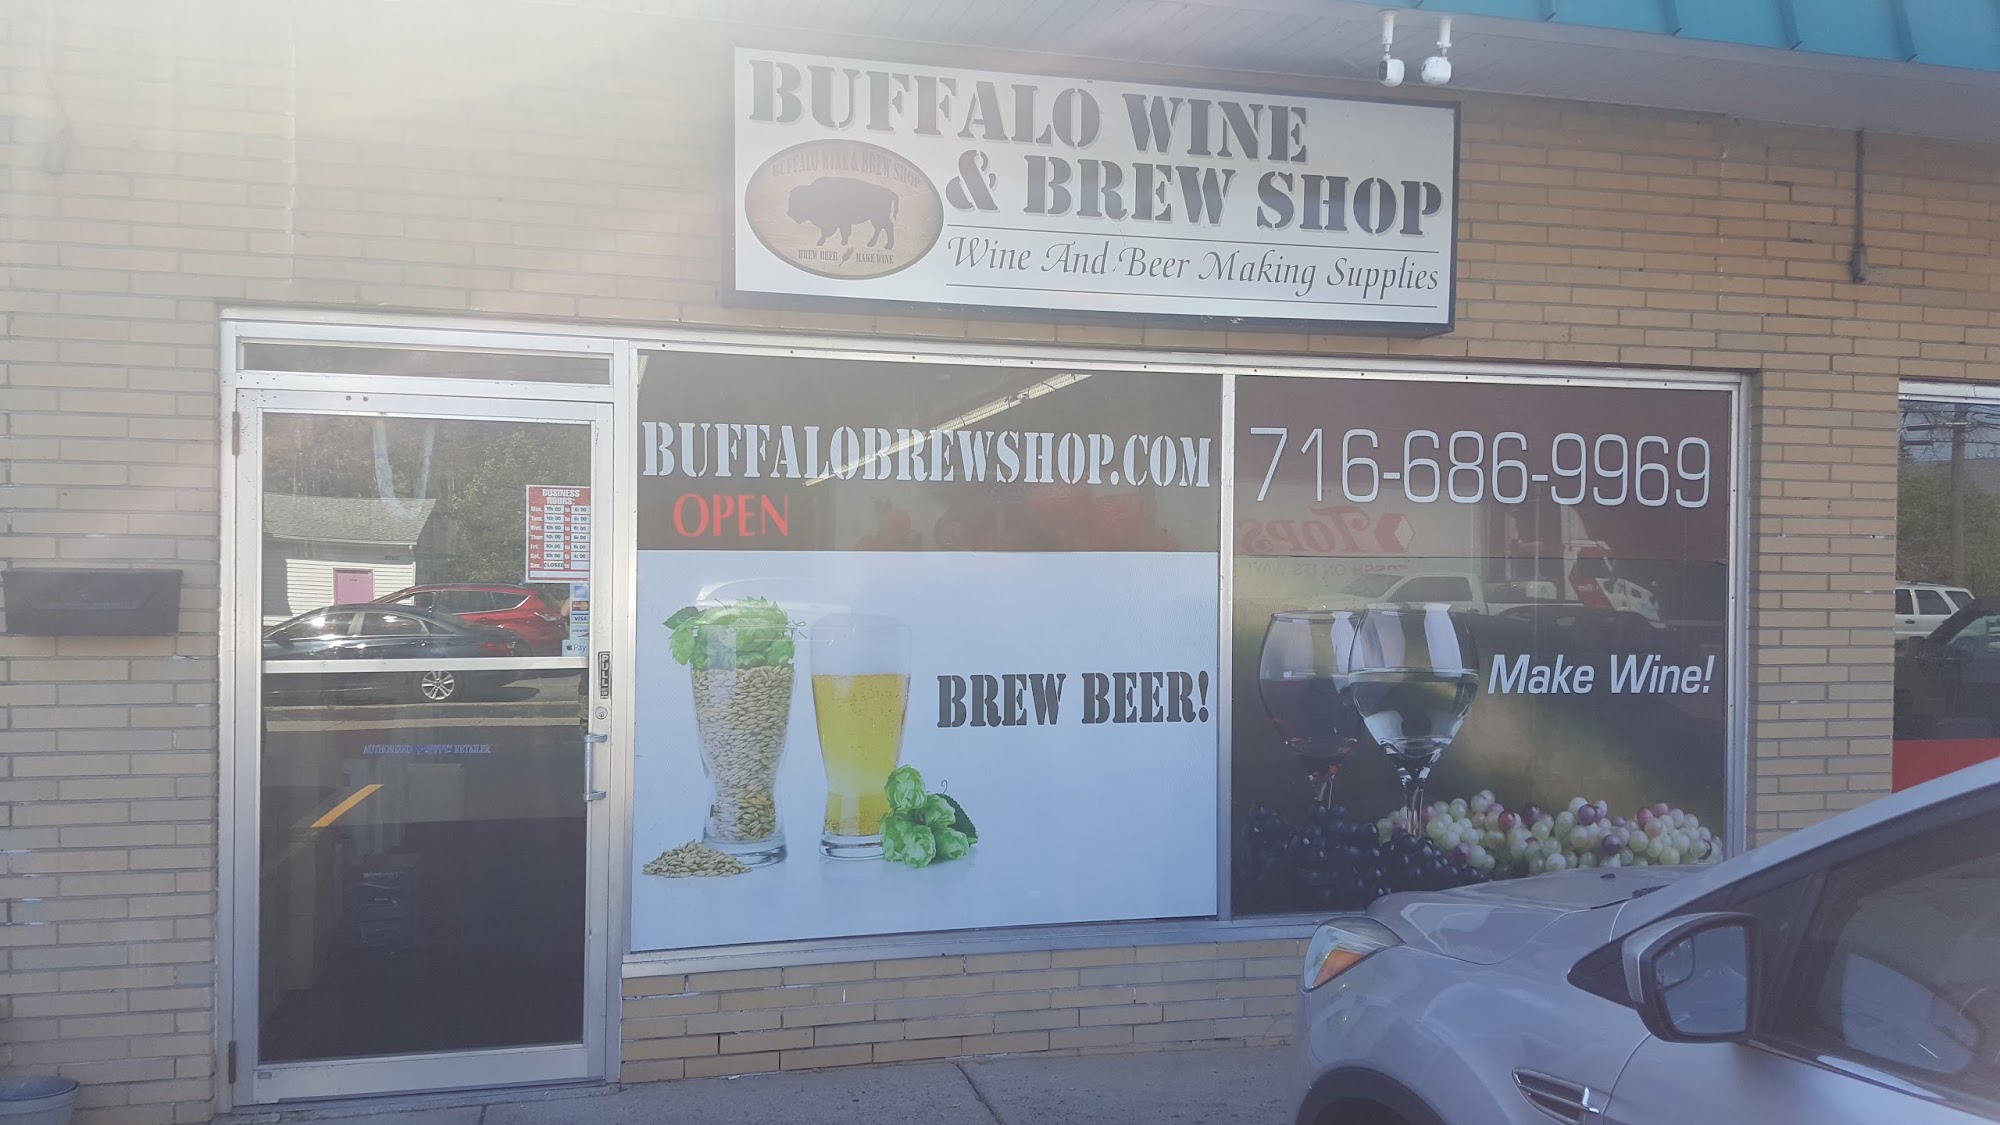 Buffalo Wine & Brew Shop LLC